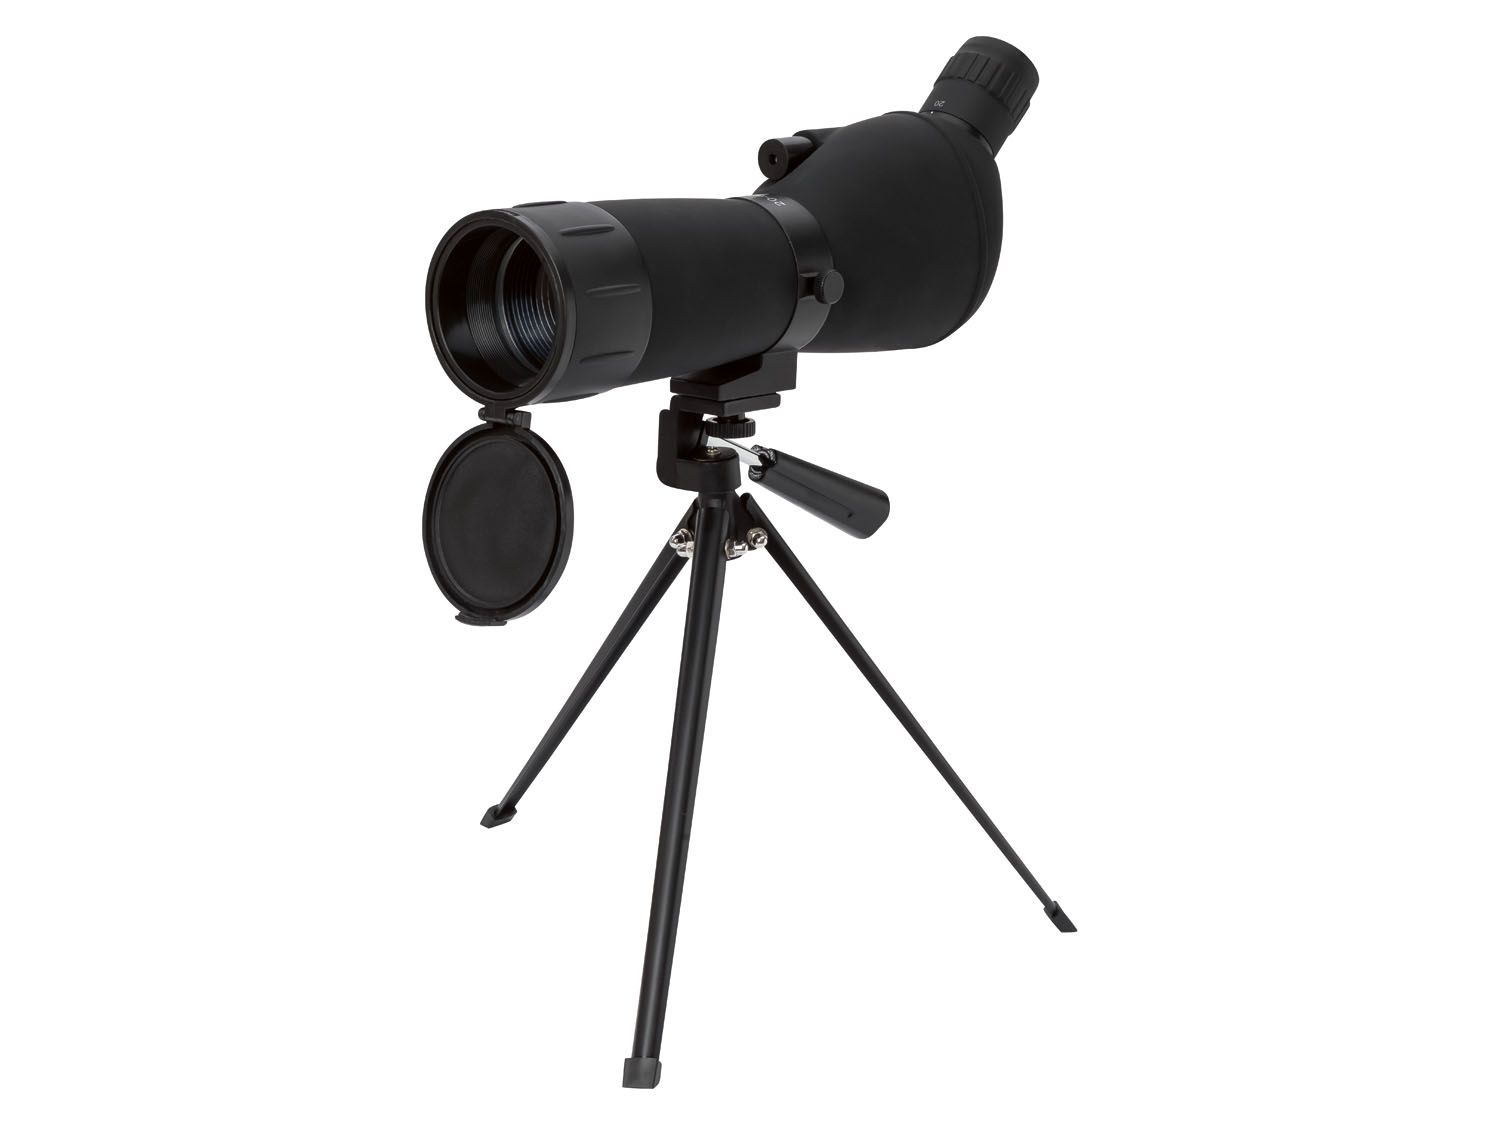 optioneel Haan Indirect Spotting scope telescoop kopen? | LIDL